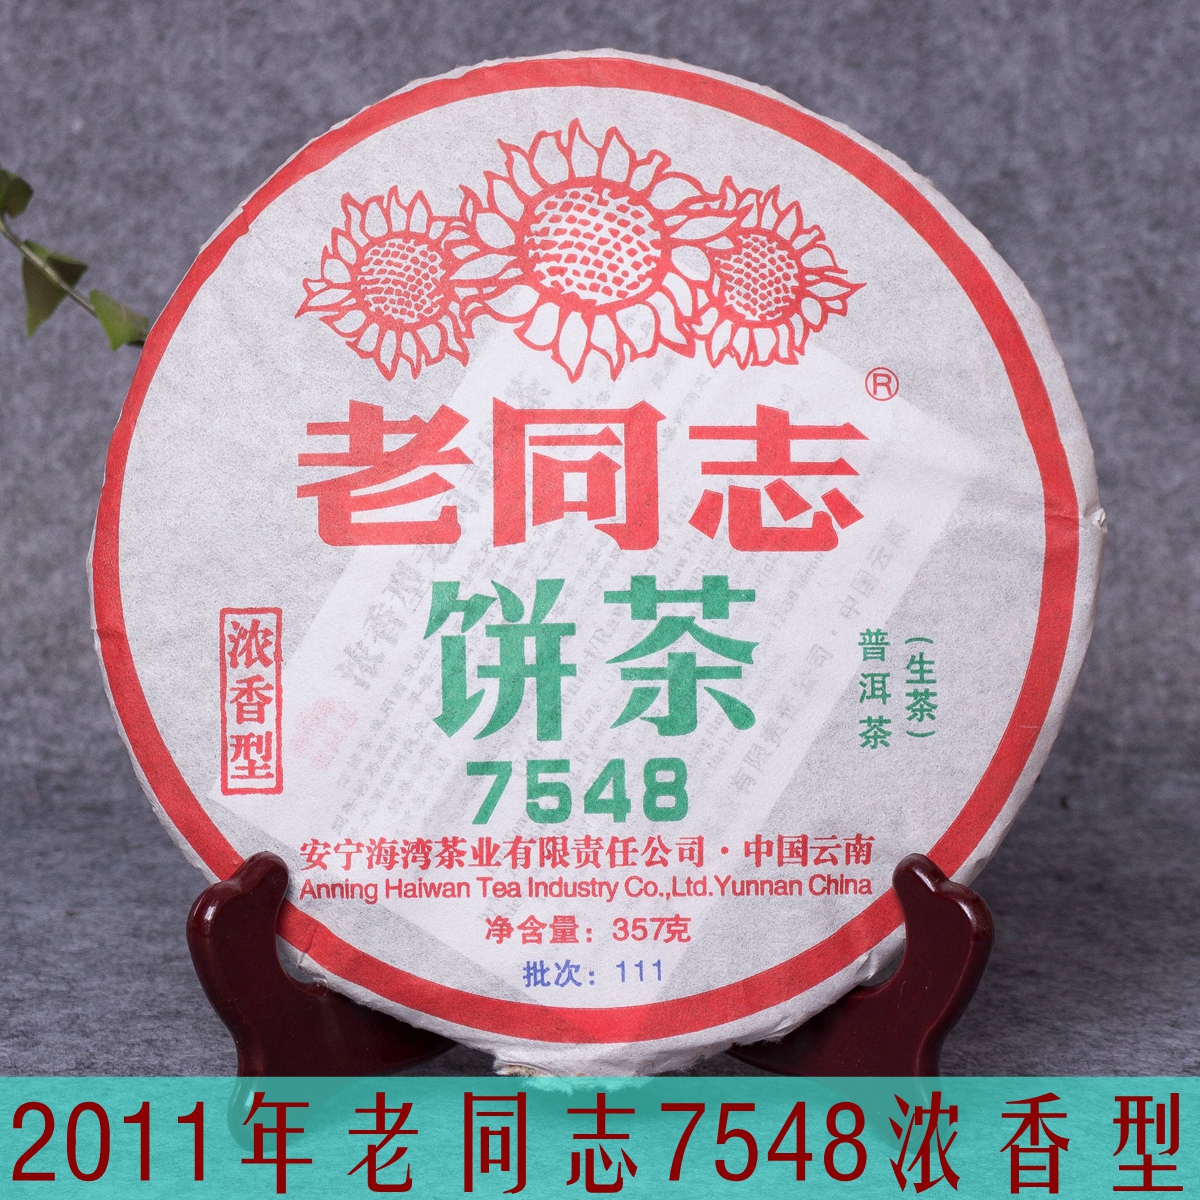 亦凡茶业海湾茶叶老同志普洱茶2011年111批7548浓香型生茶357克